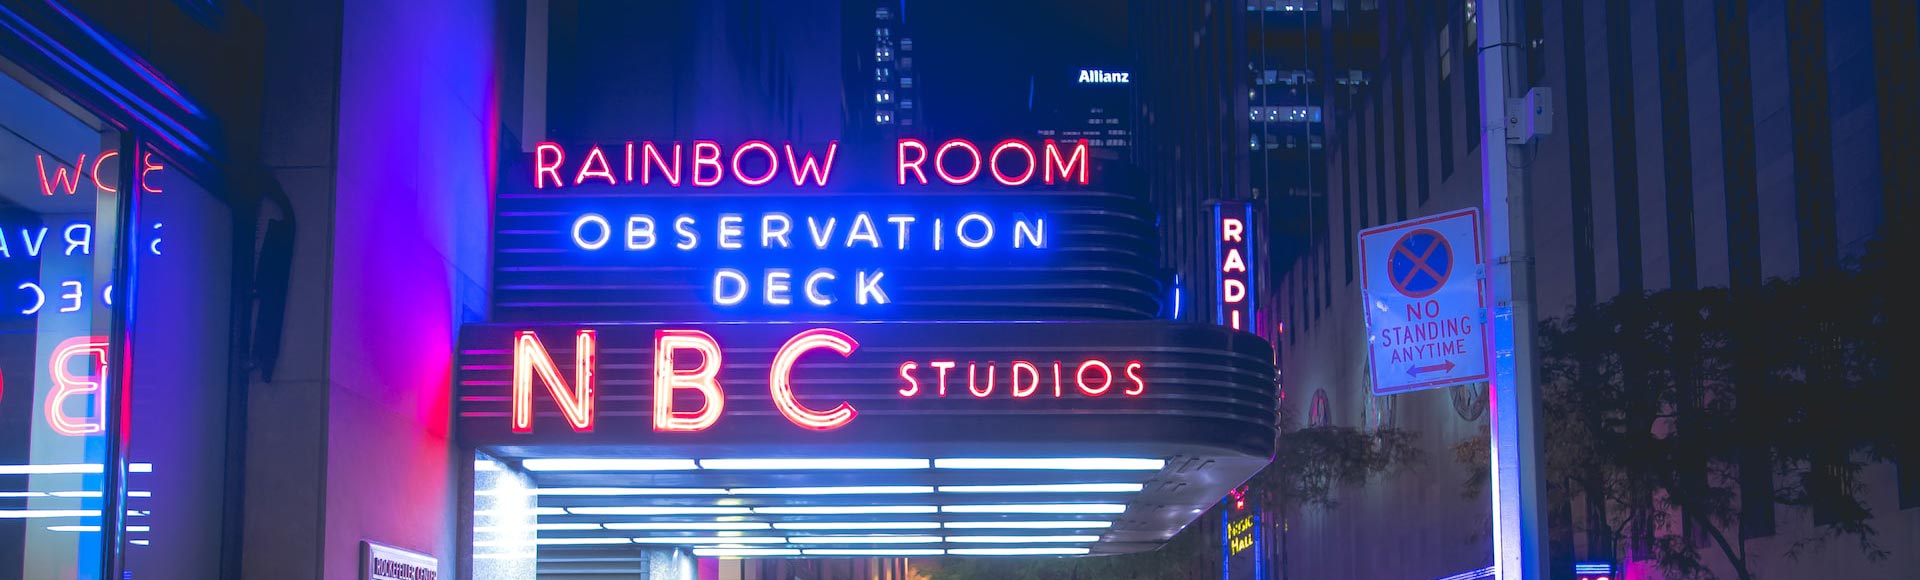 Insegna al neon dell'Observation Deck della NBC di notte